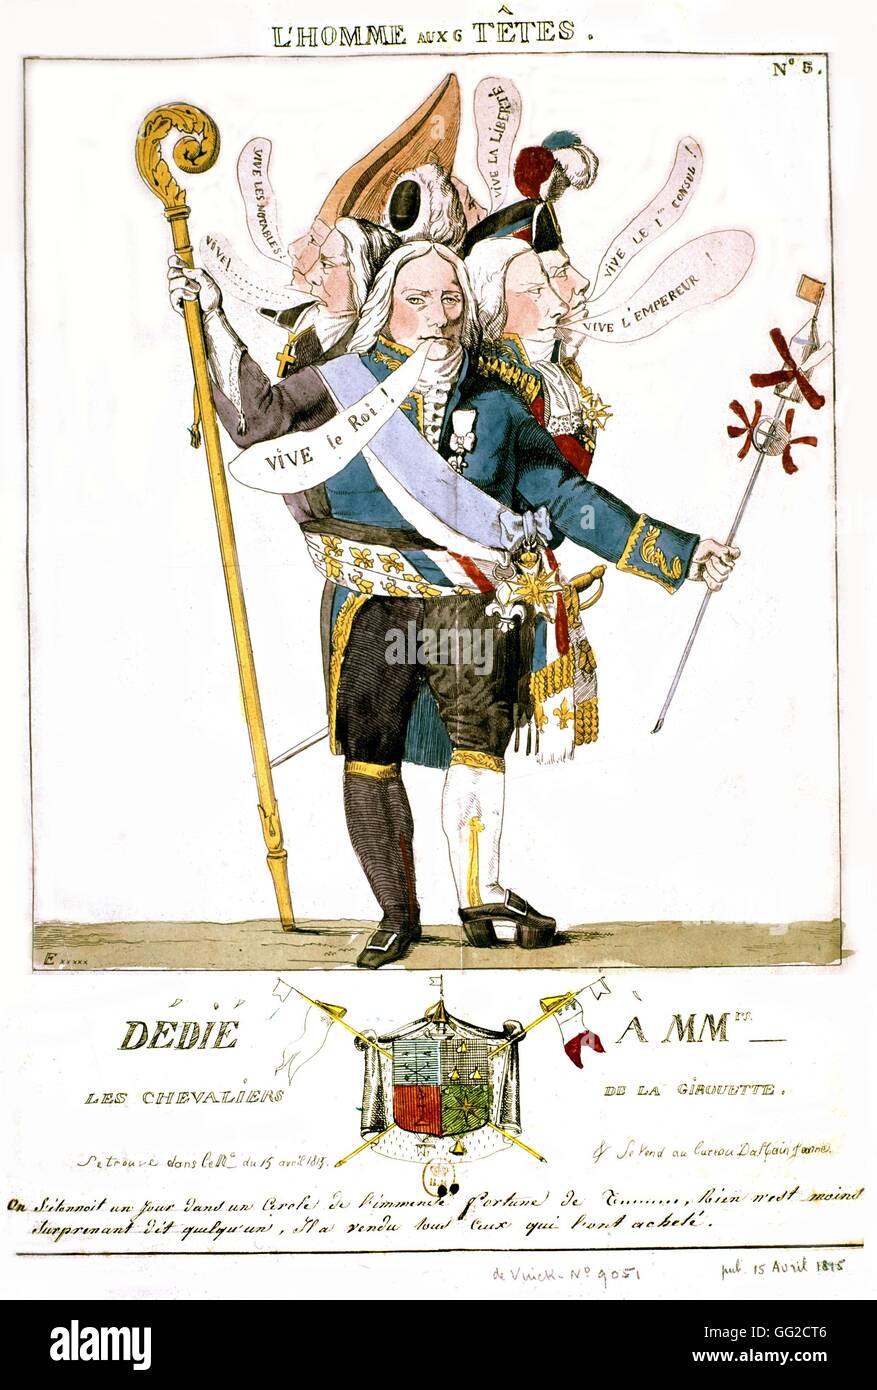 Anonyme Karikatur Talleyrand, unter der Leitung von sechs Mann 18. Jahrhundert Frankreich Stockfoto